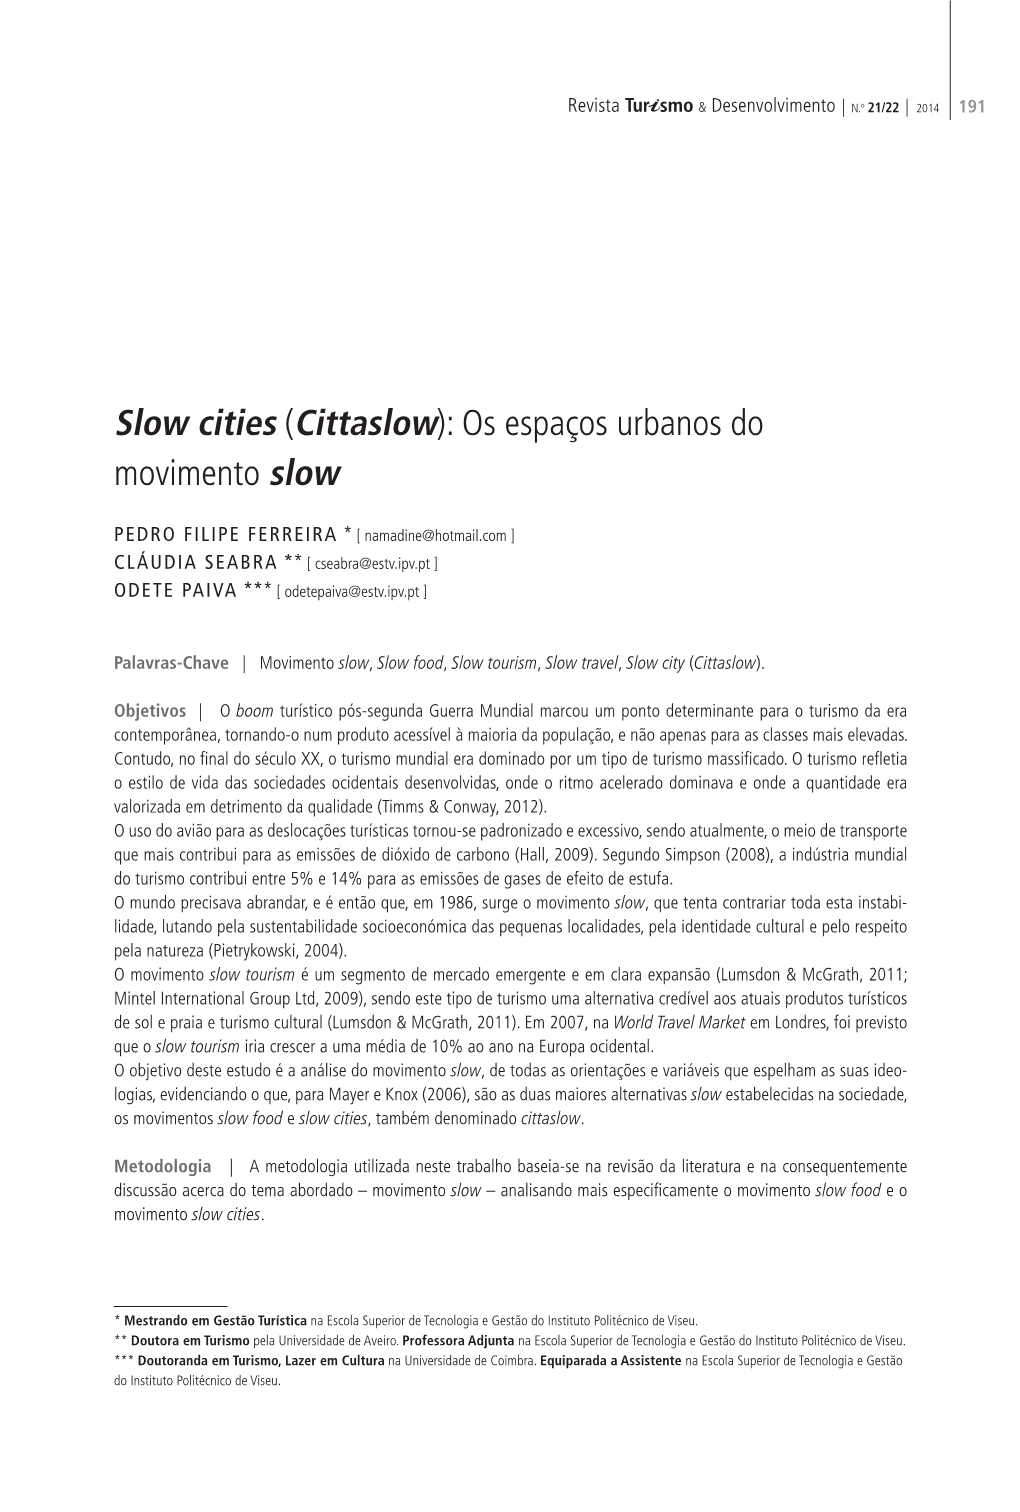 Slow Cities (Cittaslow): Os Espaços Urbanos Do Movimento Slow